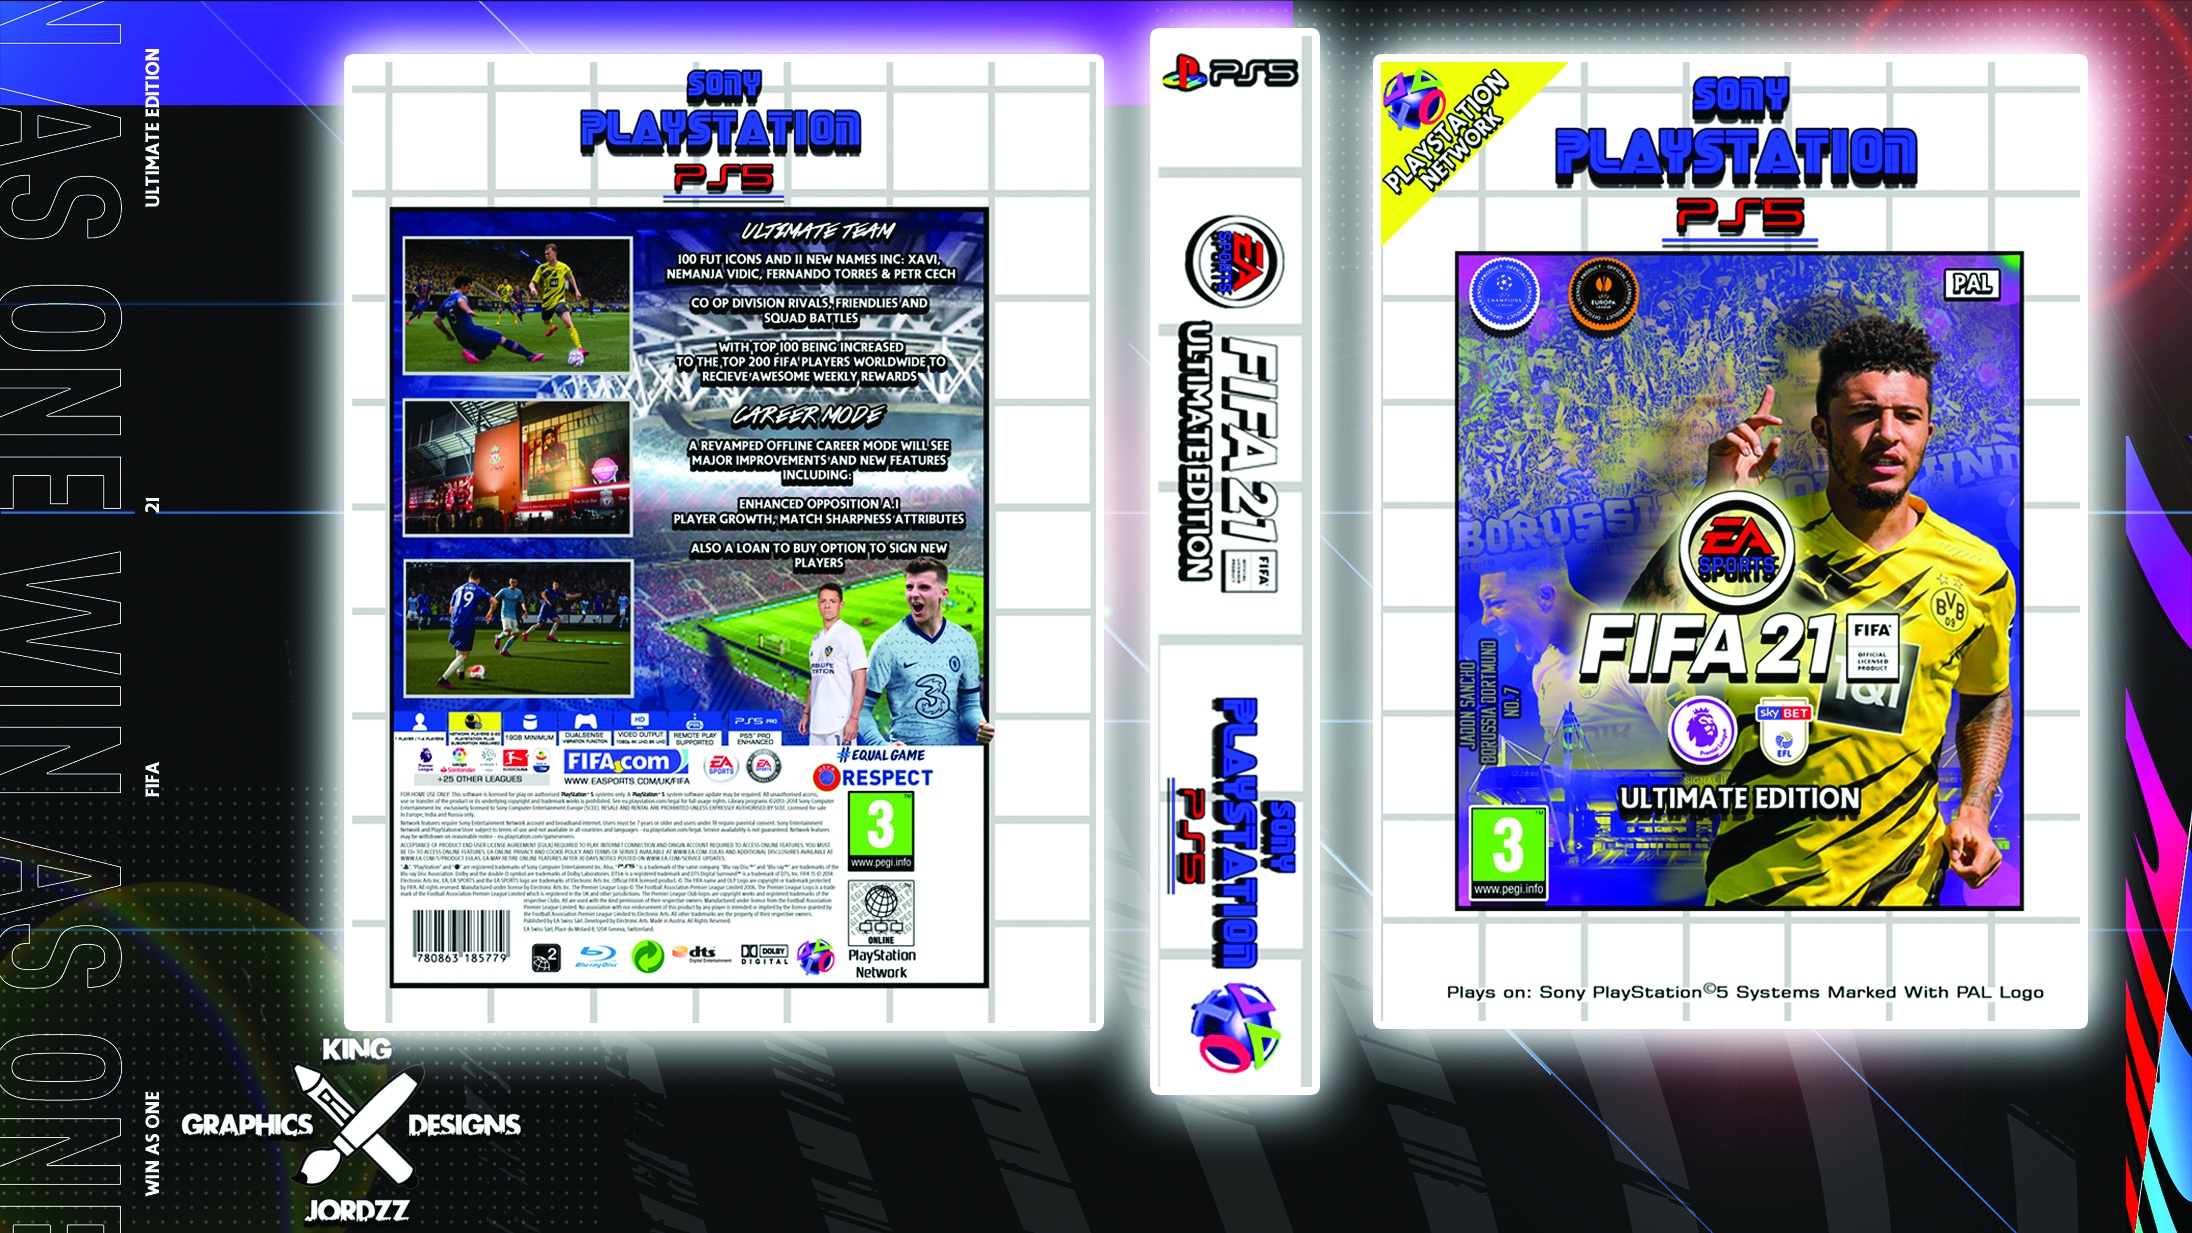 FIFA 21 - Ultimate Edition box cover